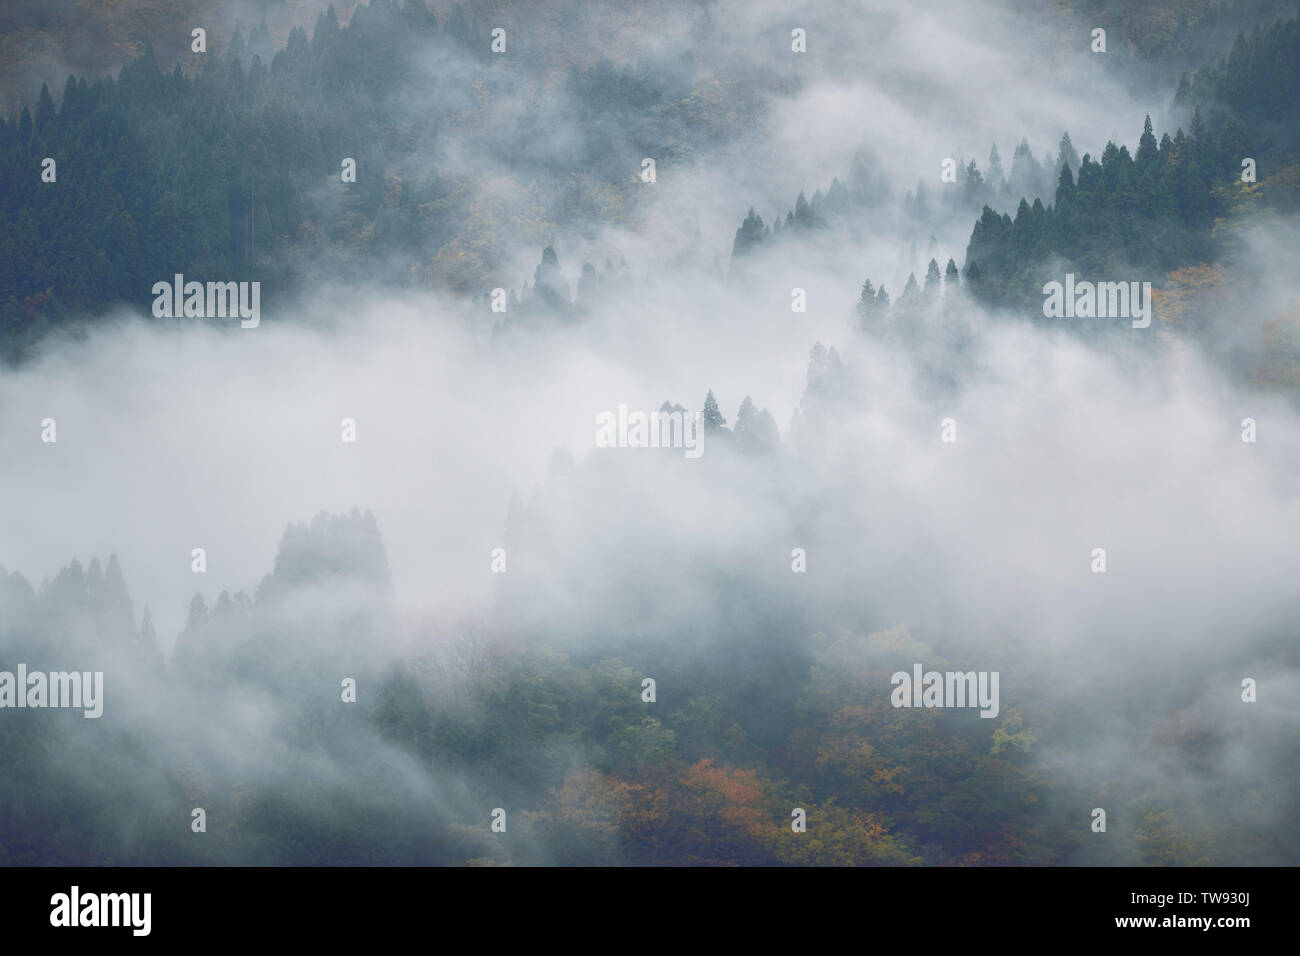 Cubierto de niebla bosque de montaña, hermosos paisajes de naturaleza abstracta. Ainokura, Toyama, Japón. Foto de stock